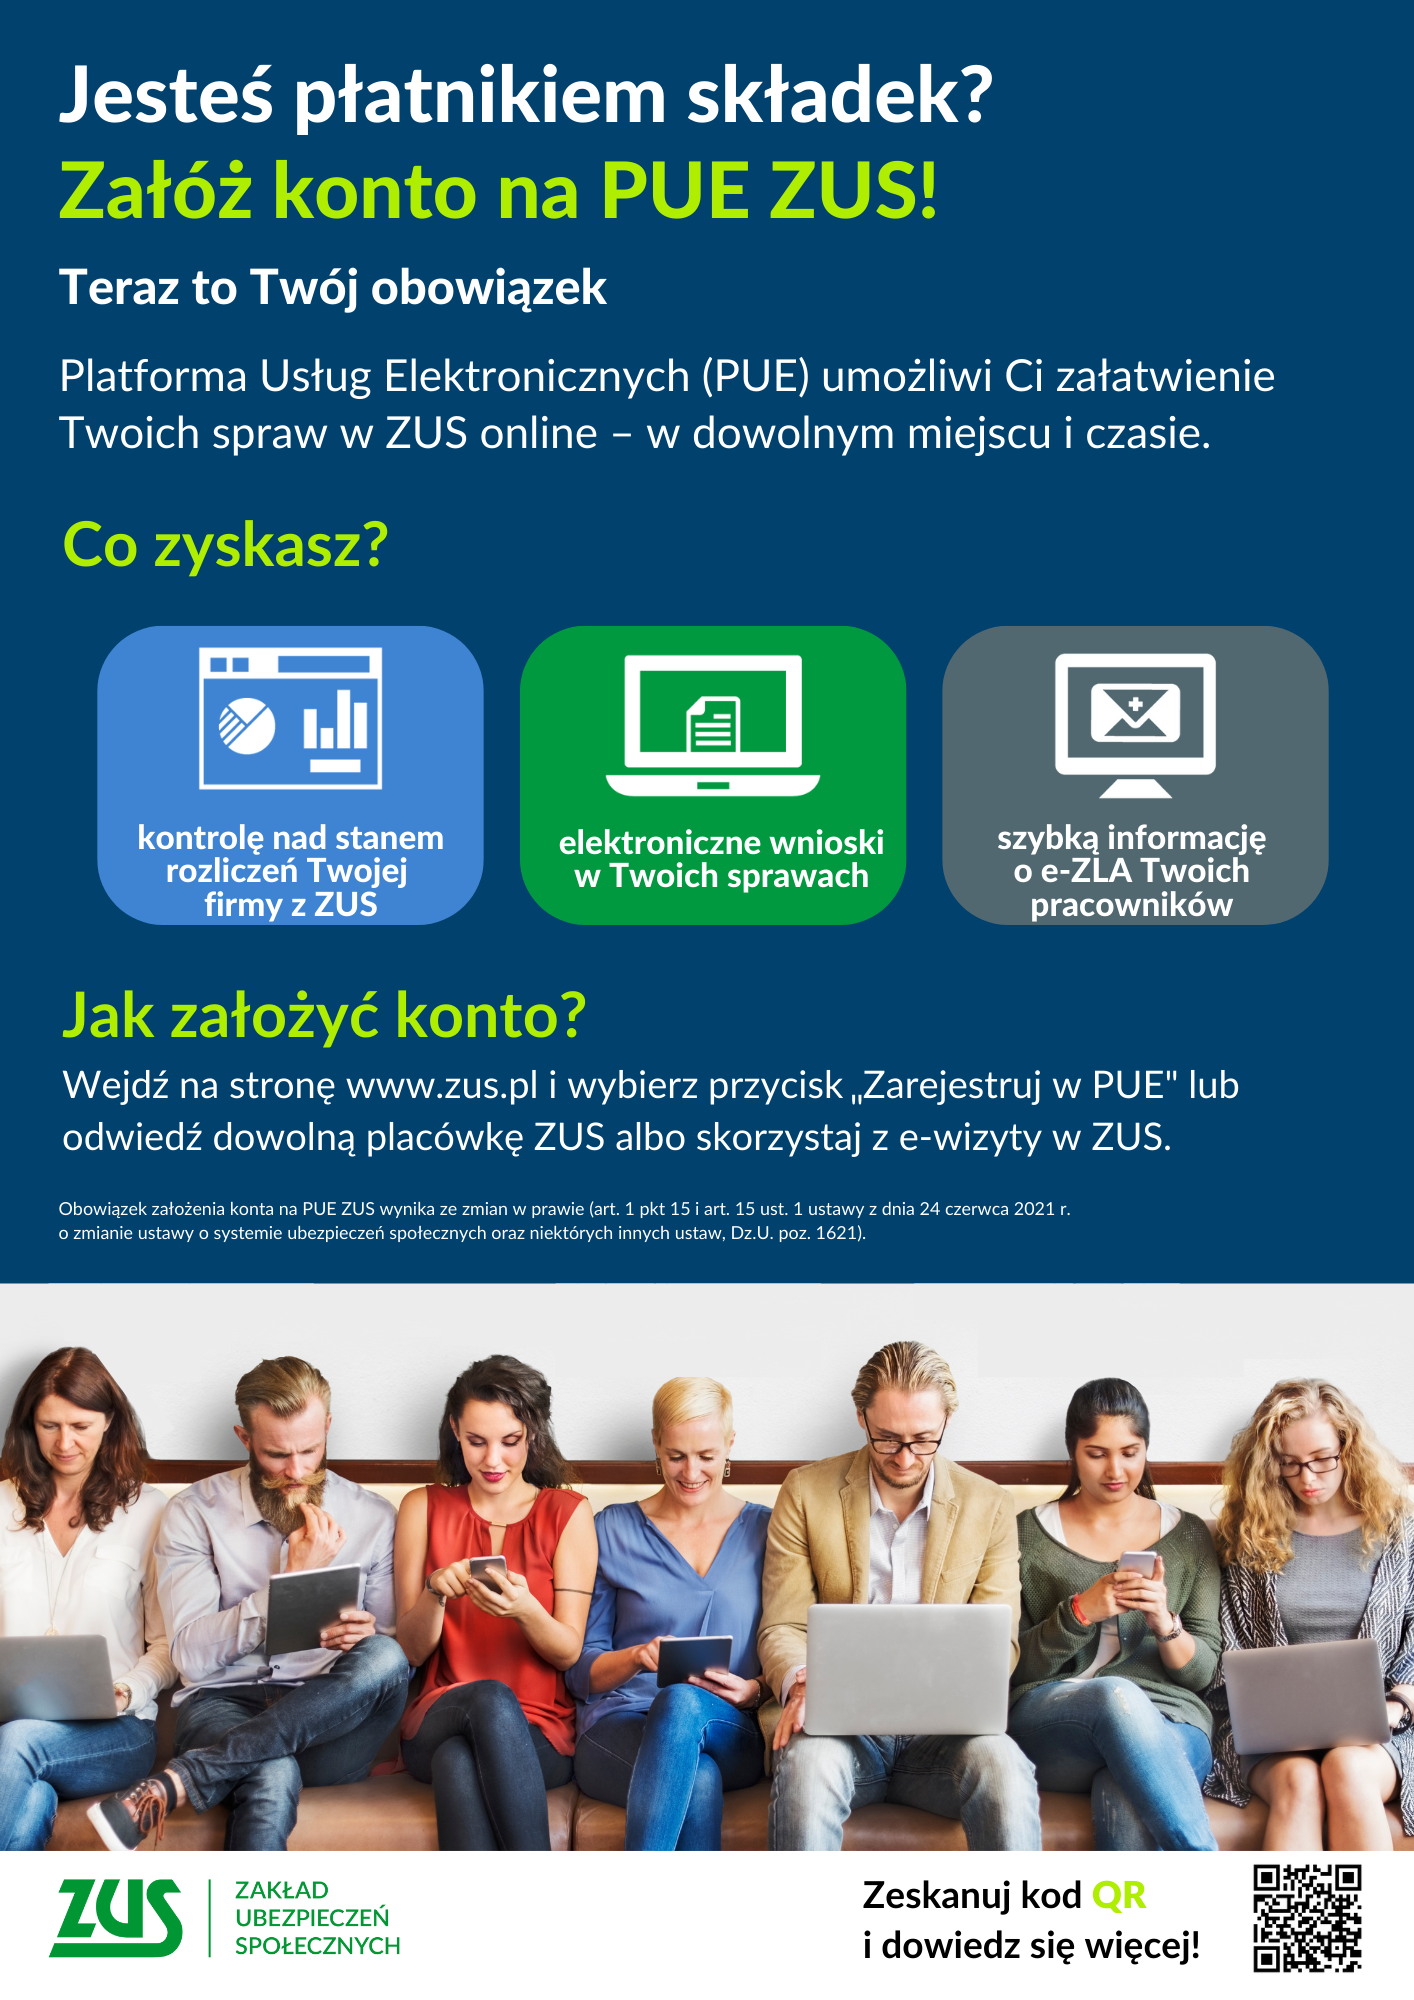 Plakat reklamujący założenie konta PUE ZUS, pokazuje korzyści i sposoby założenia konta. Plakat zawiera zdjęcia i ikonografiki.